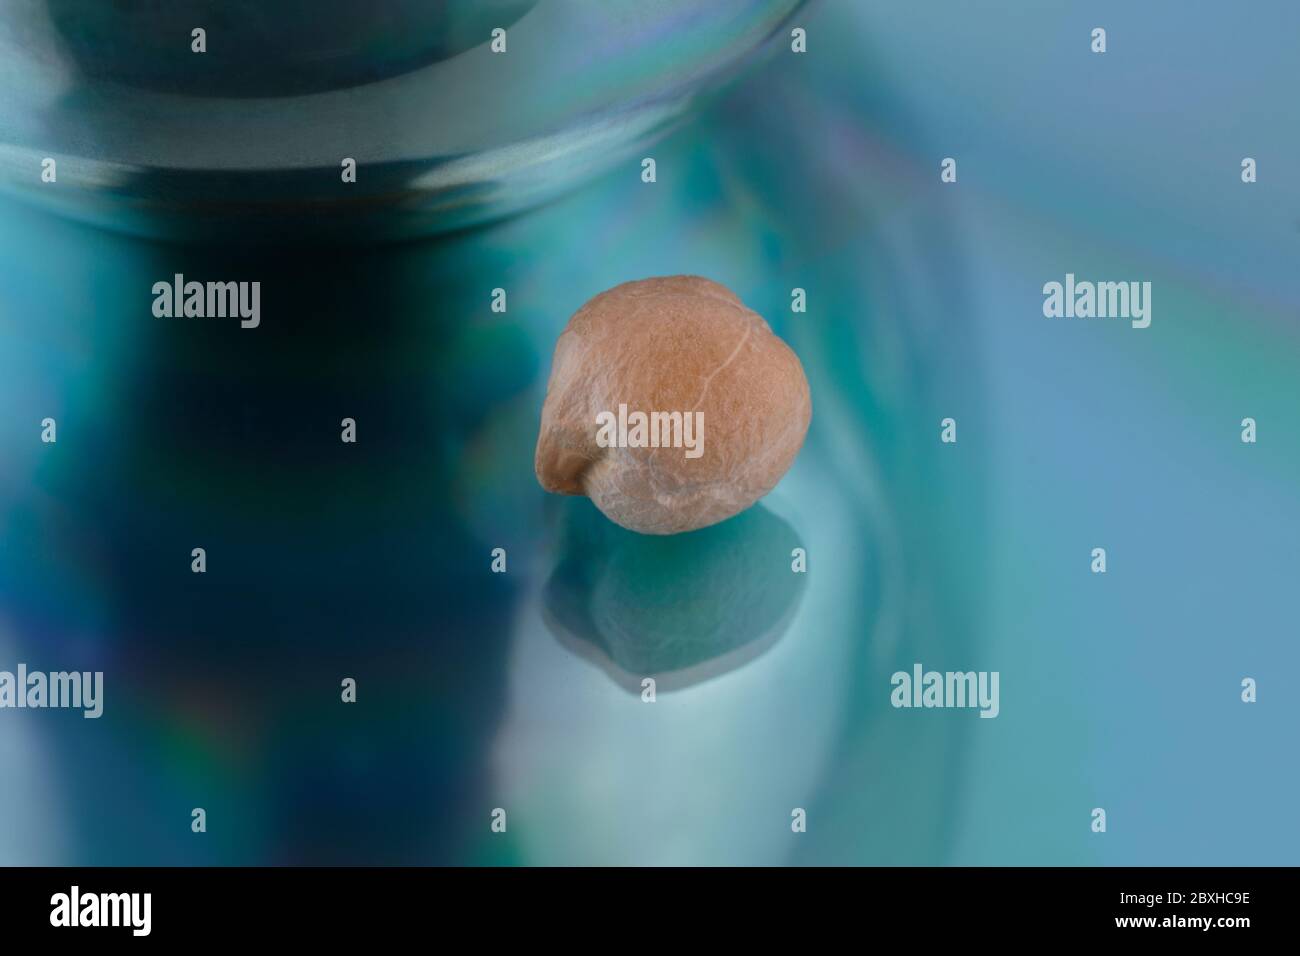 Eine einzelne, trockene Garbanzobohne oder Kichererbsen auf einem abstrakten blauen, irrenden Hintergrund, aufgenommen mit einem Makroobjektiv Stockfoto